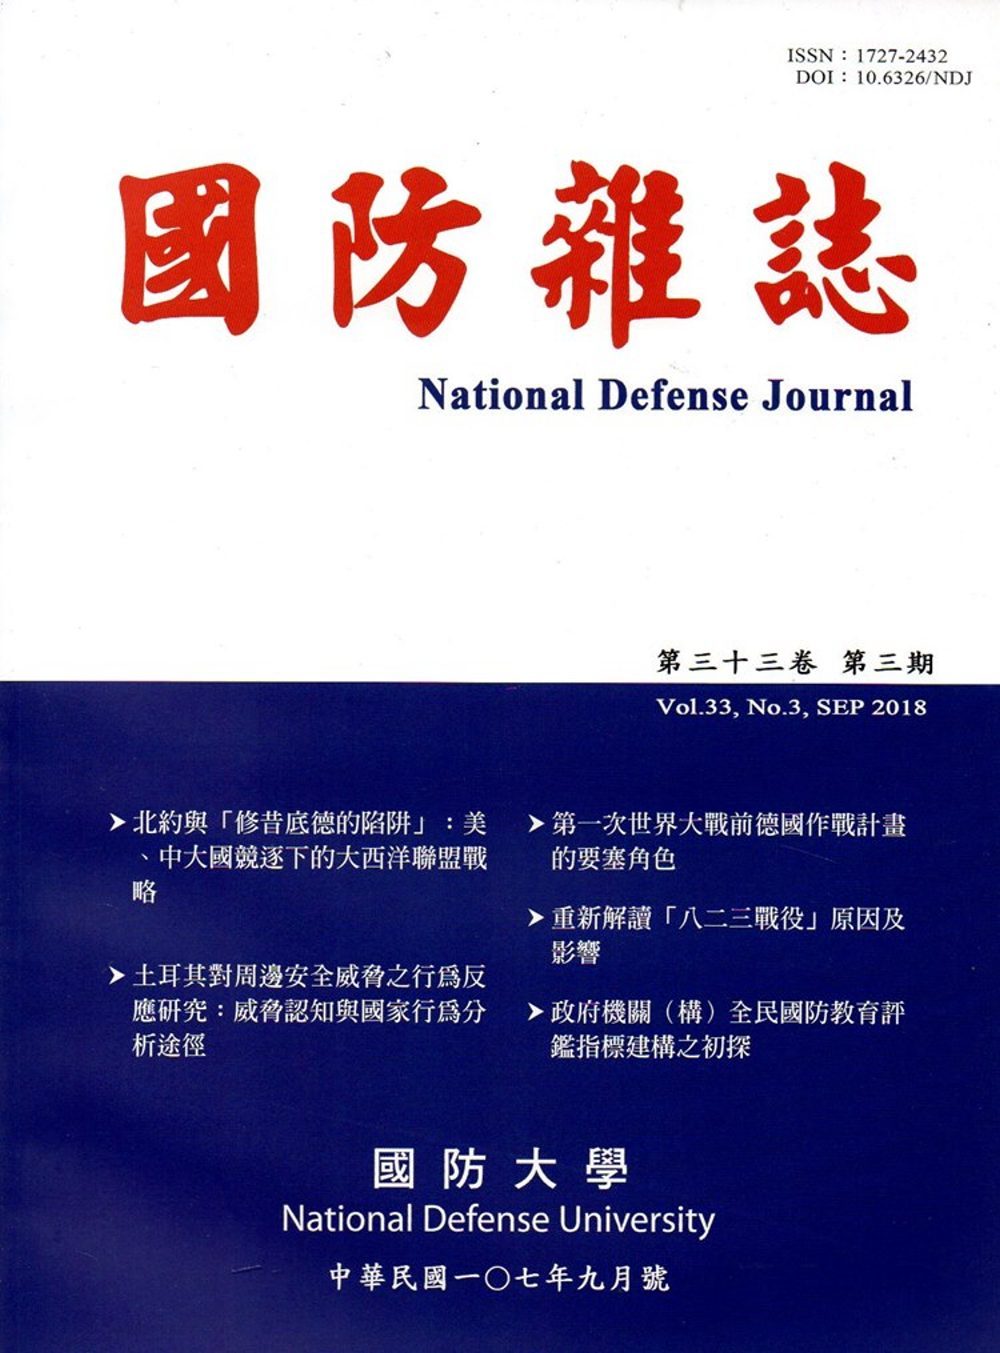 國防雜誌季刊第33卷第3期(2018.09)